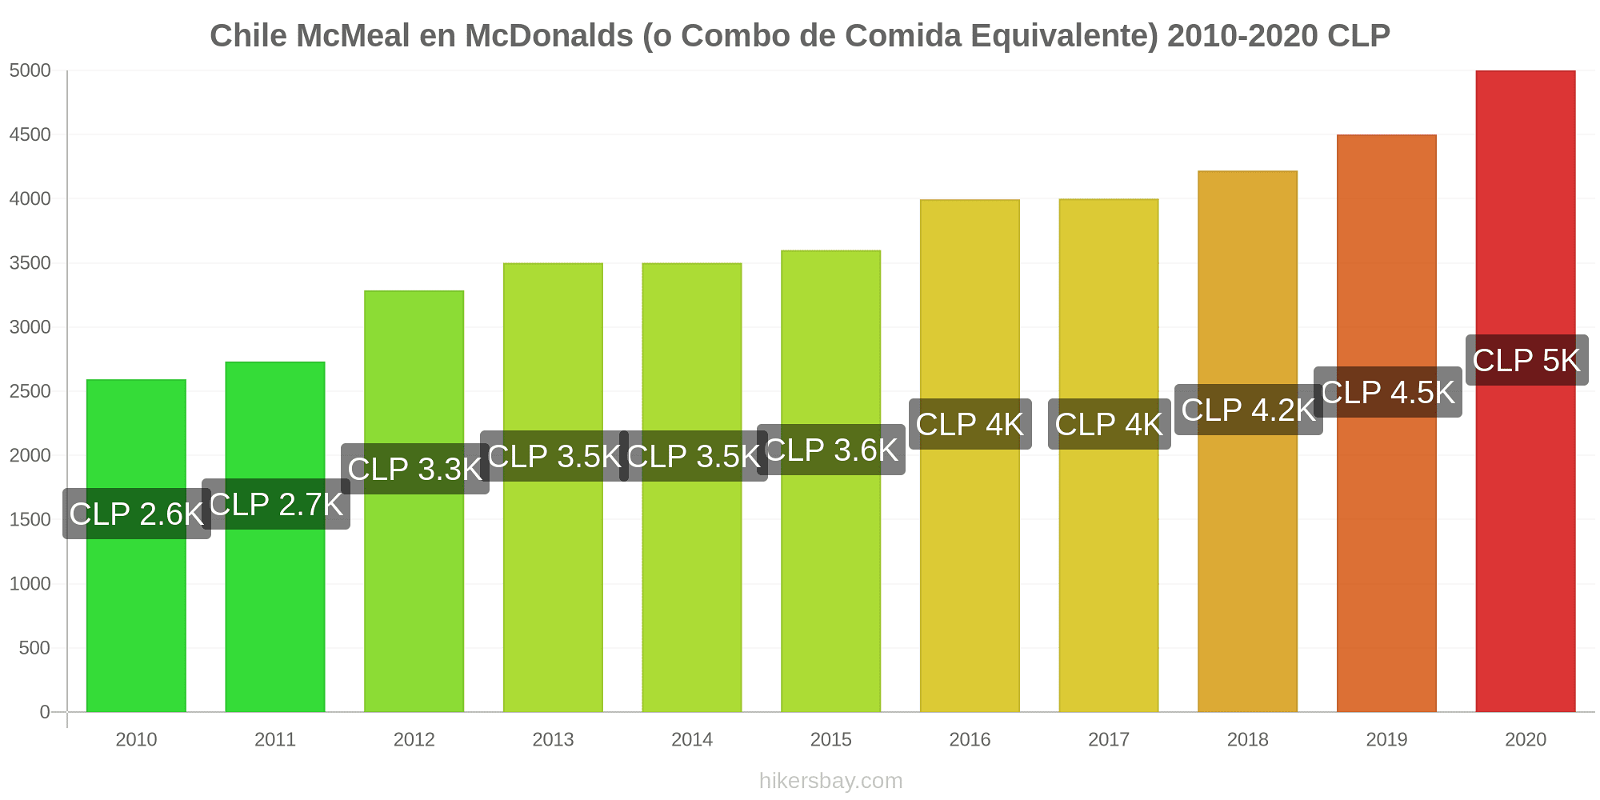 Chile cambios de precios McMeal en McDonalds (o menú equivalente) hikersbay.com